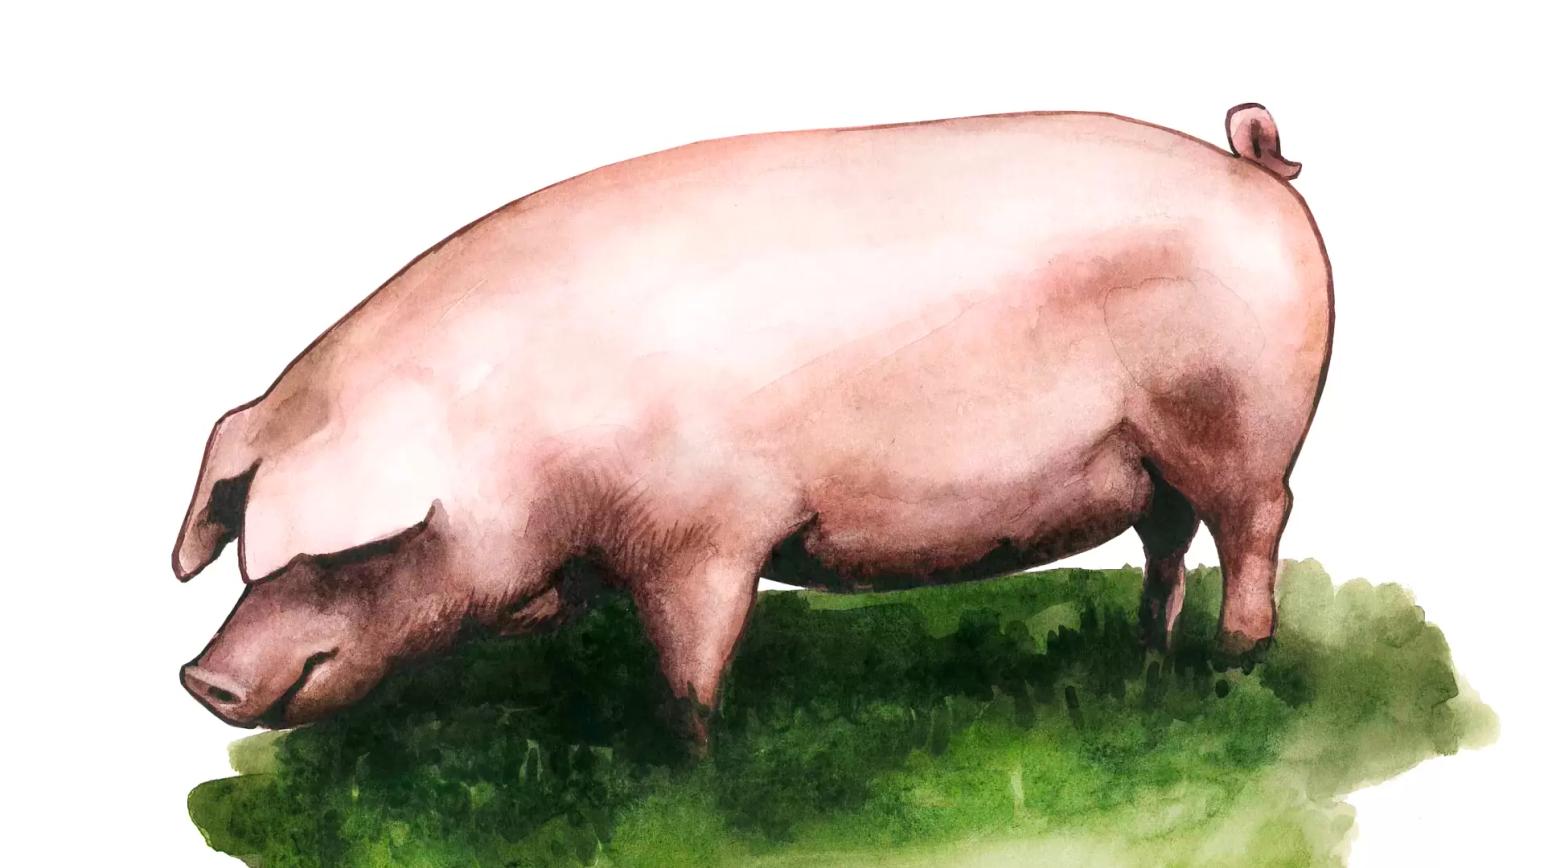 Длинноухая белая порода свиней (немецкая вислоухая, ландшвайн)